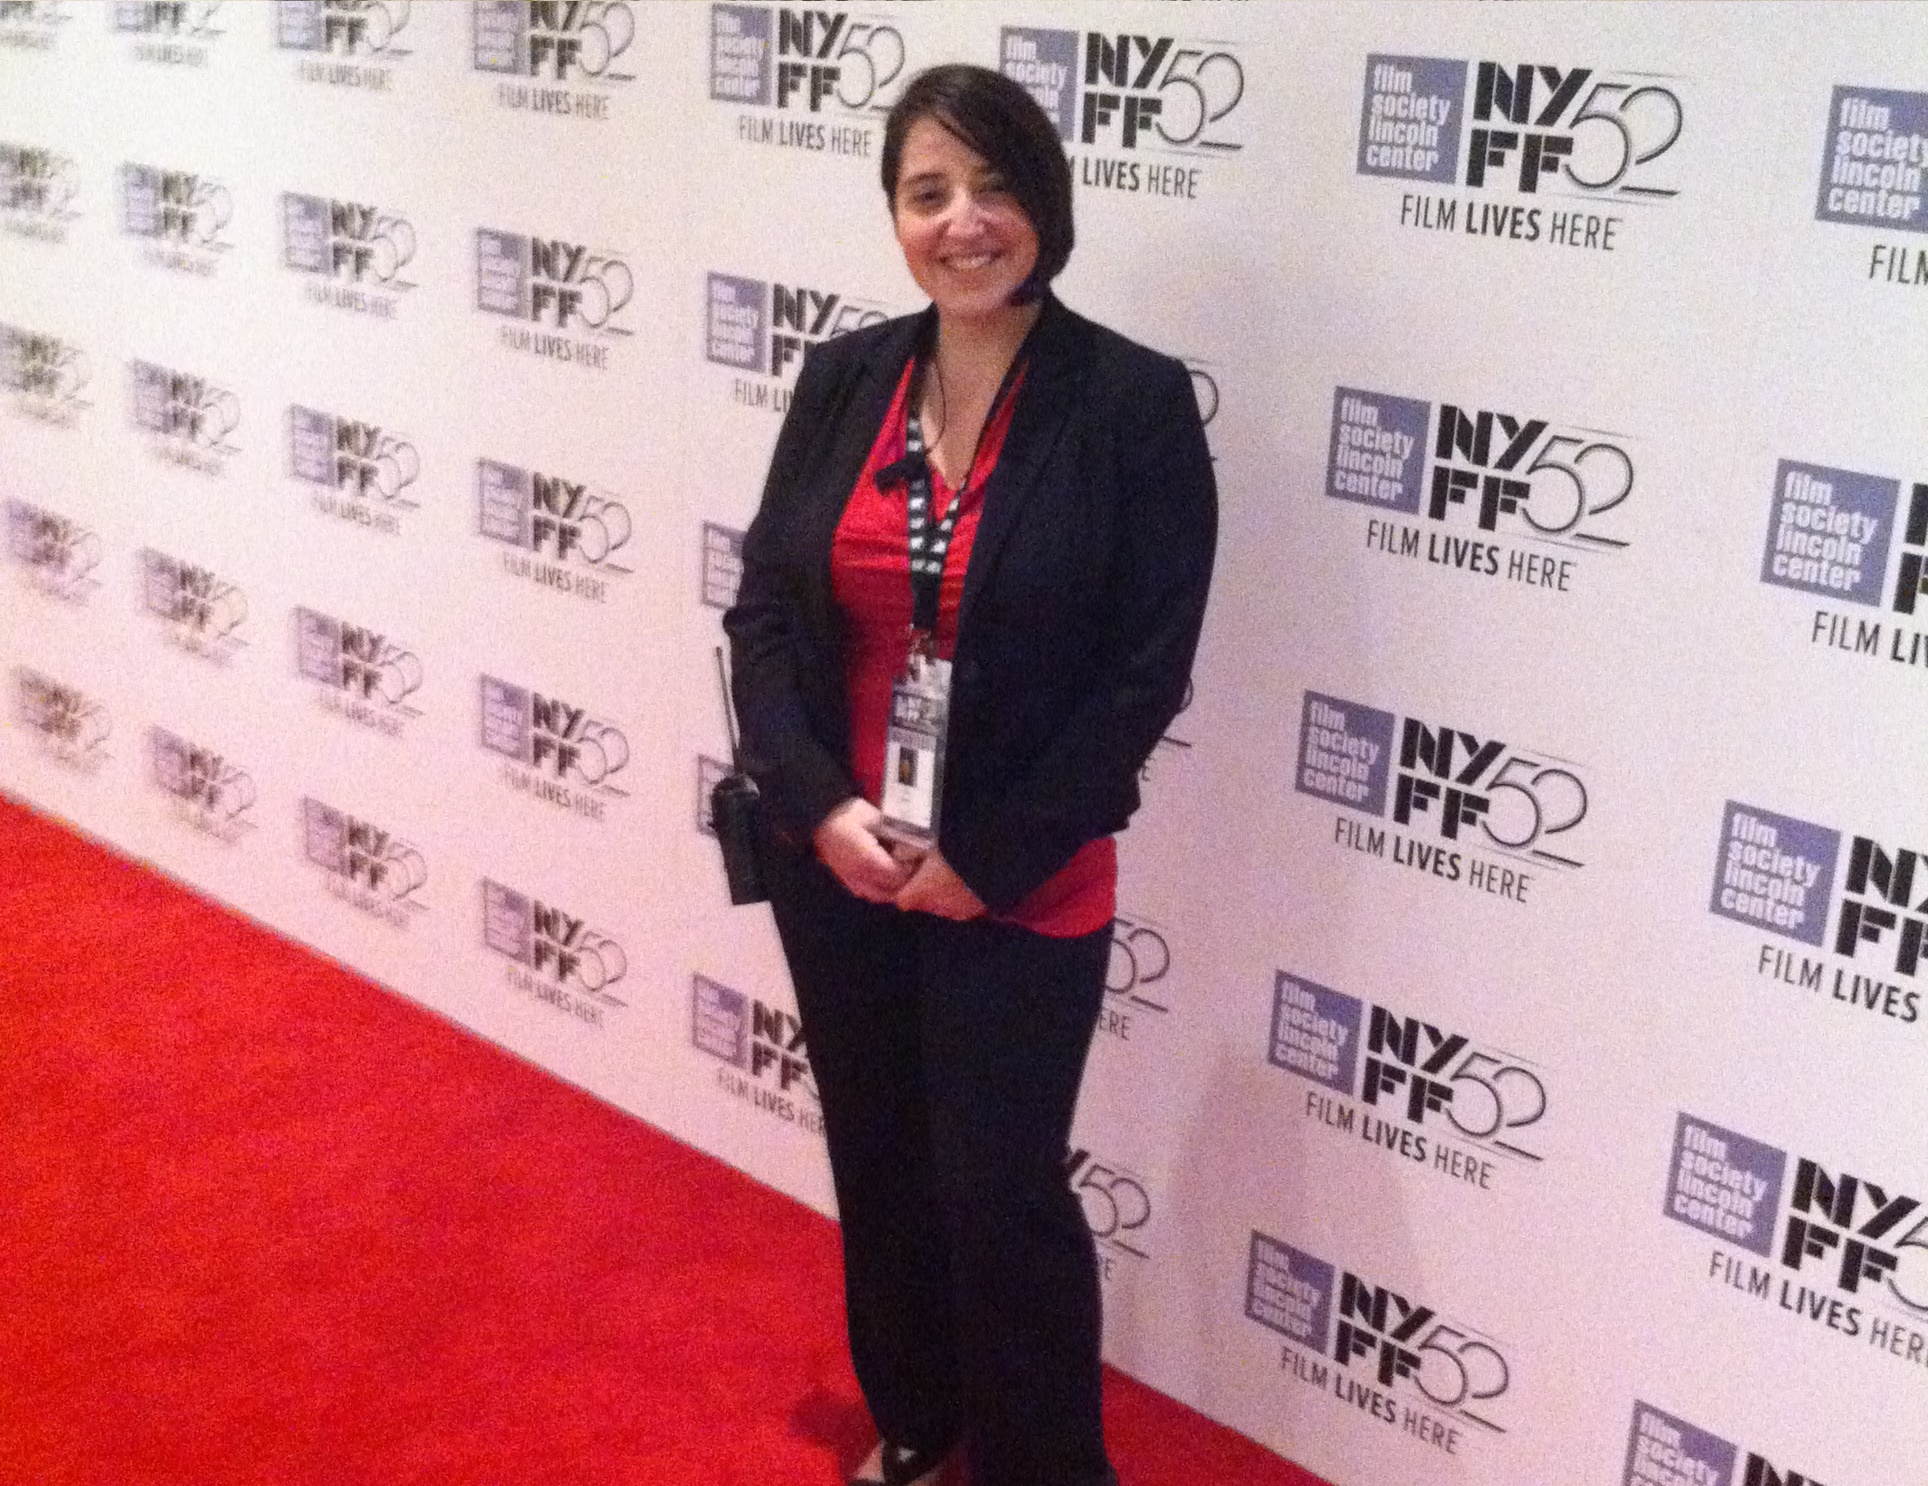 New York Film Festival, October 2014